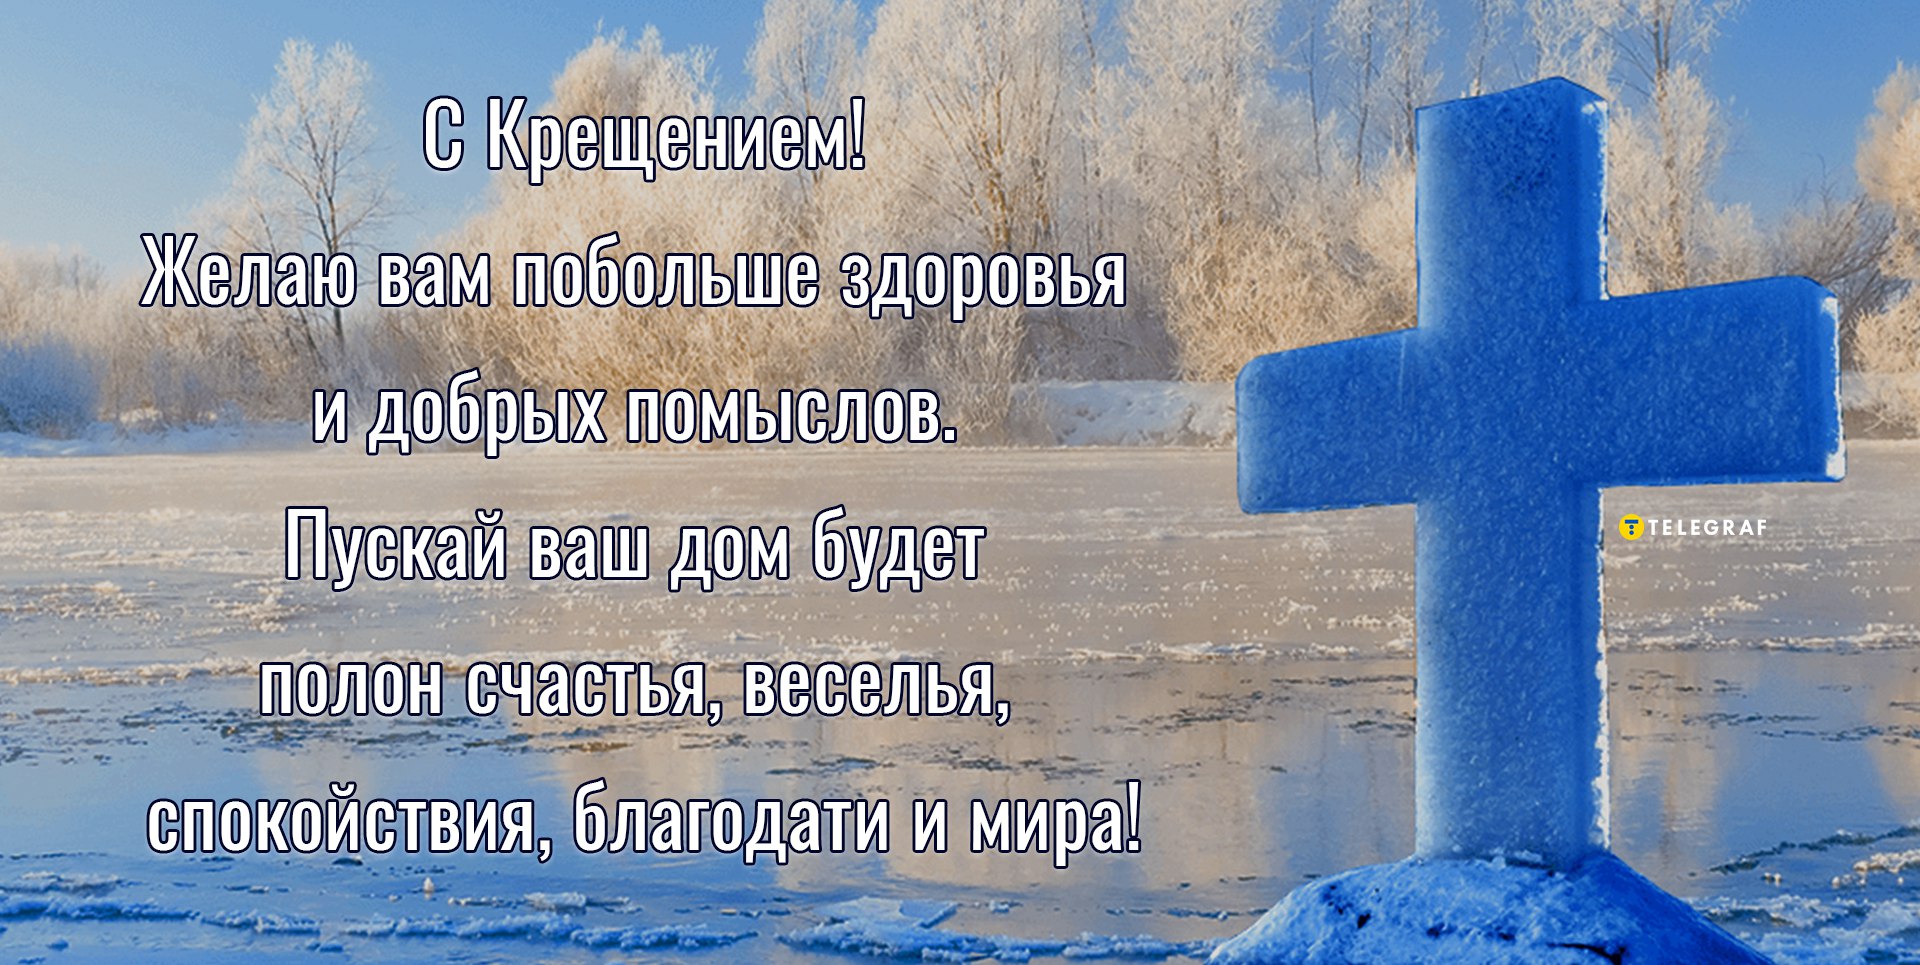 Крещение Господне: картинки со смыслом и поздравления для самых православных в - dentalart-nn.ru